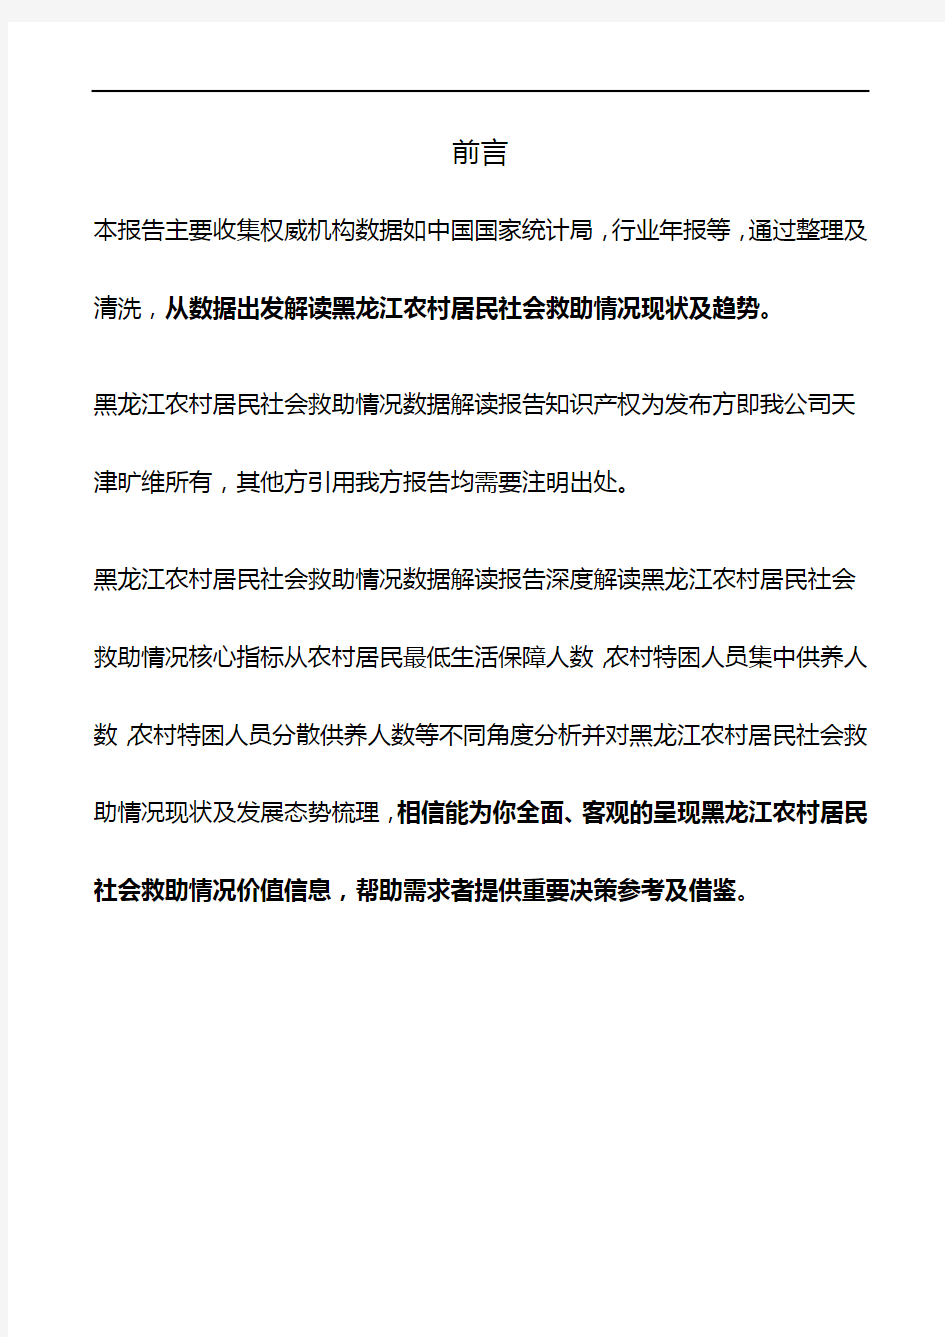 黑龙江农村居民社会救助情况3年数据解读报告2019版